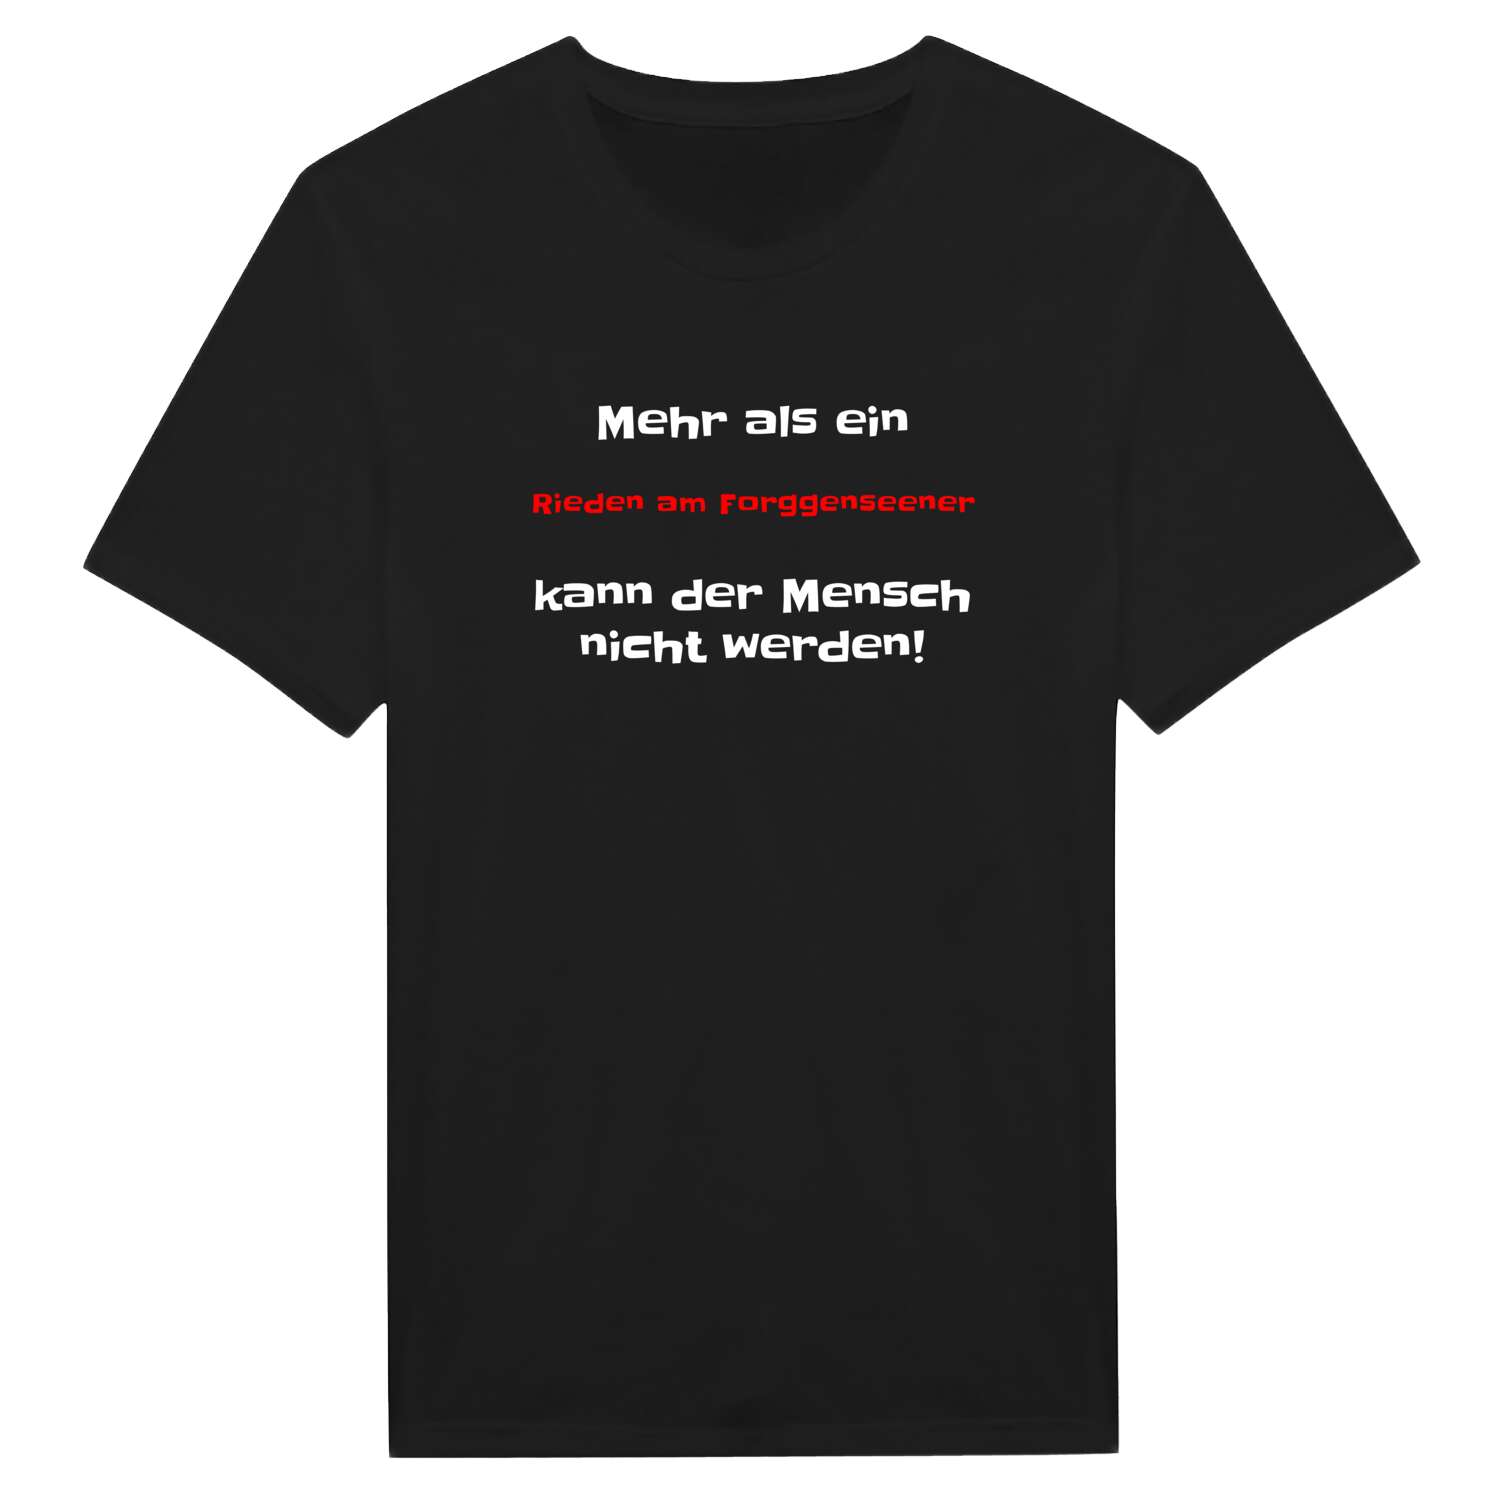 Rieden am Forggensee T-Shirt »Mehr als ein«